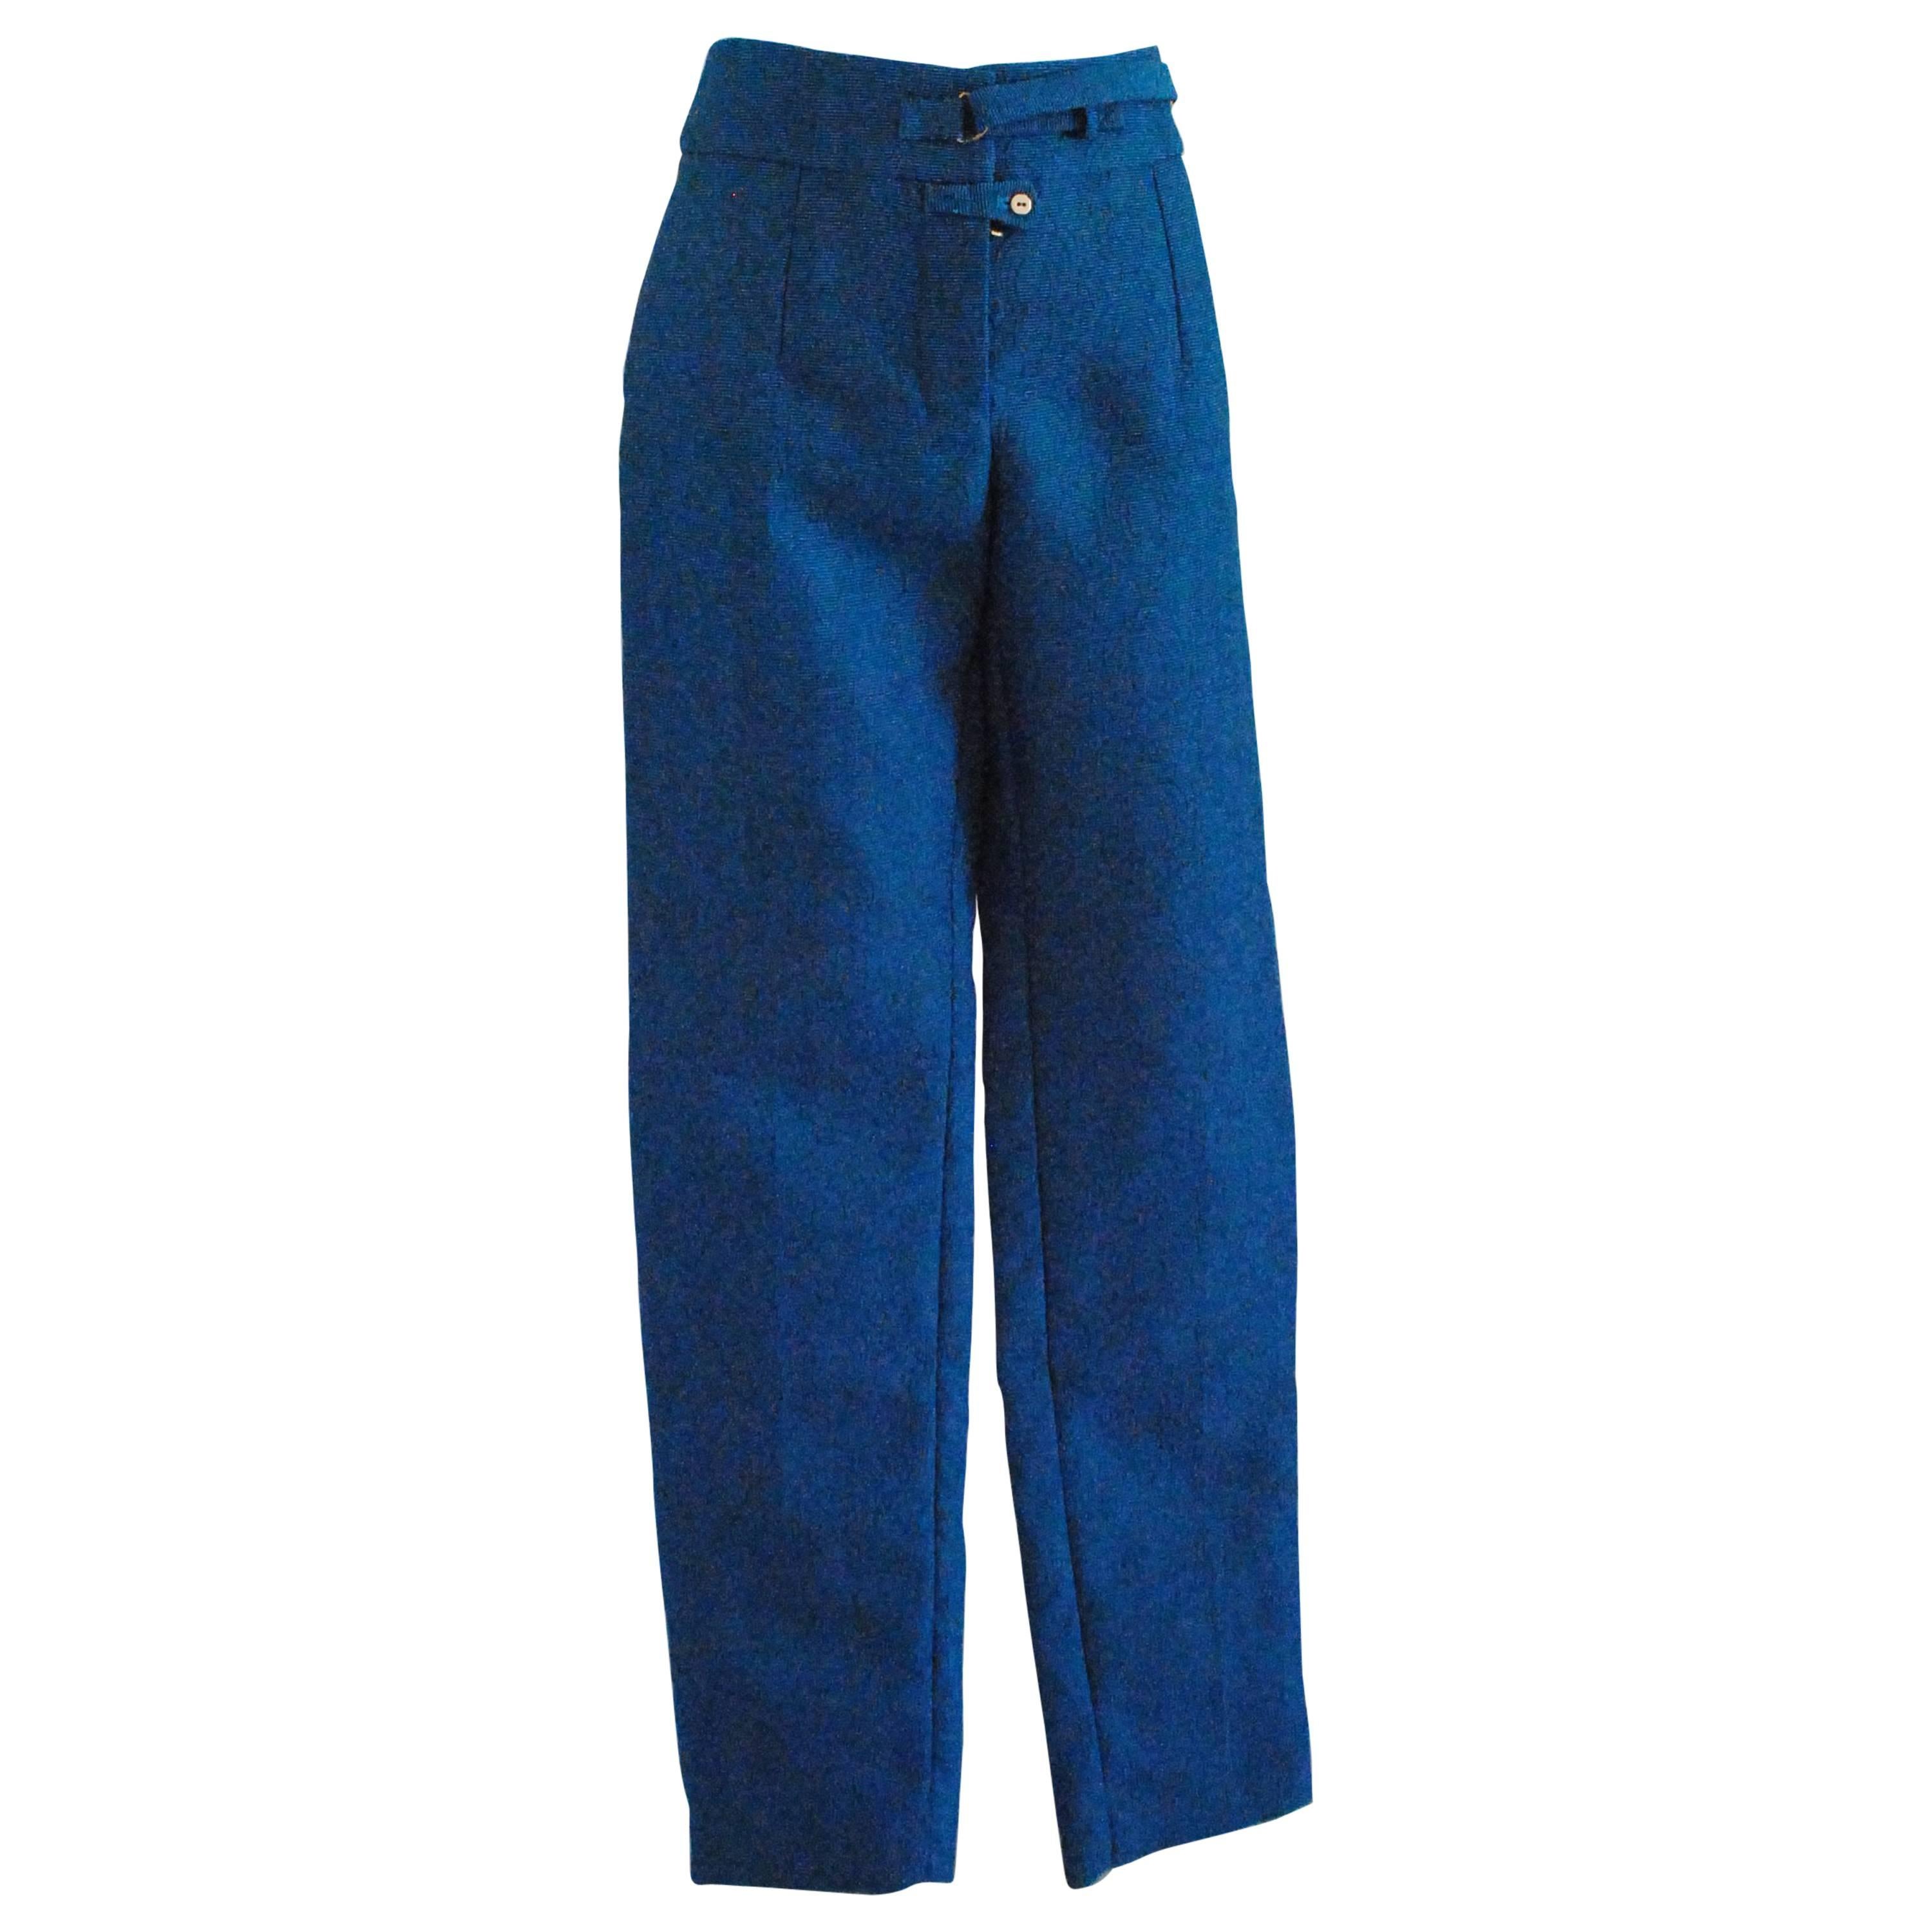 Pantalon bleu Yves Saint Laurent 2012 - Neuf avec étiquette